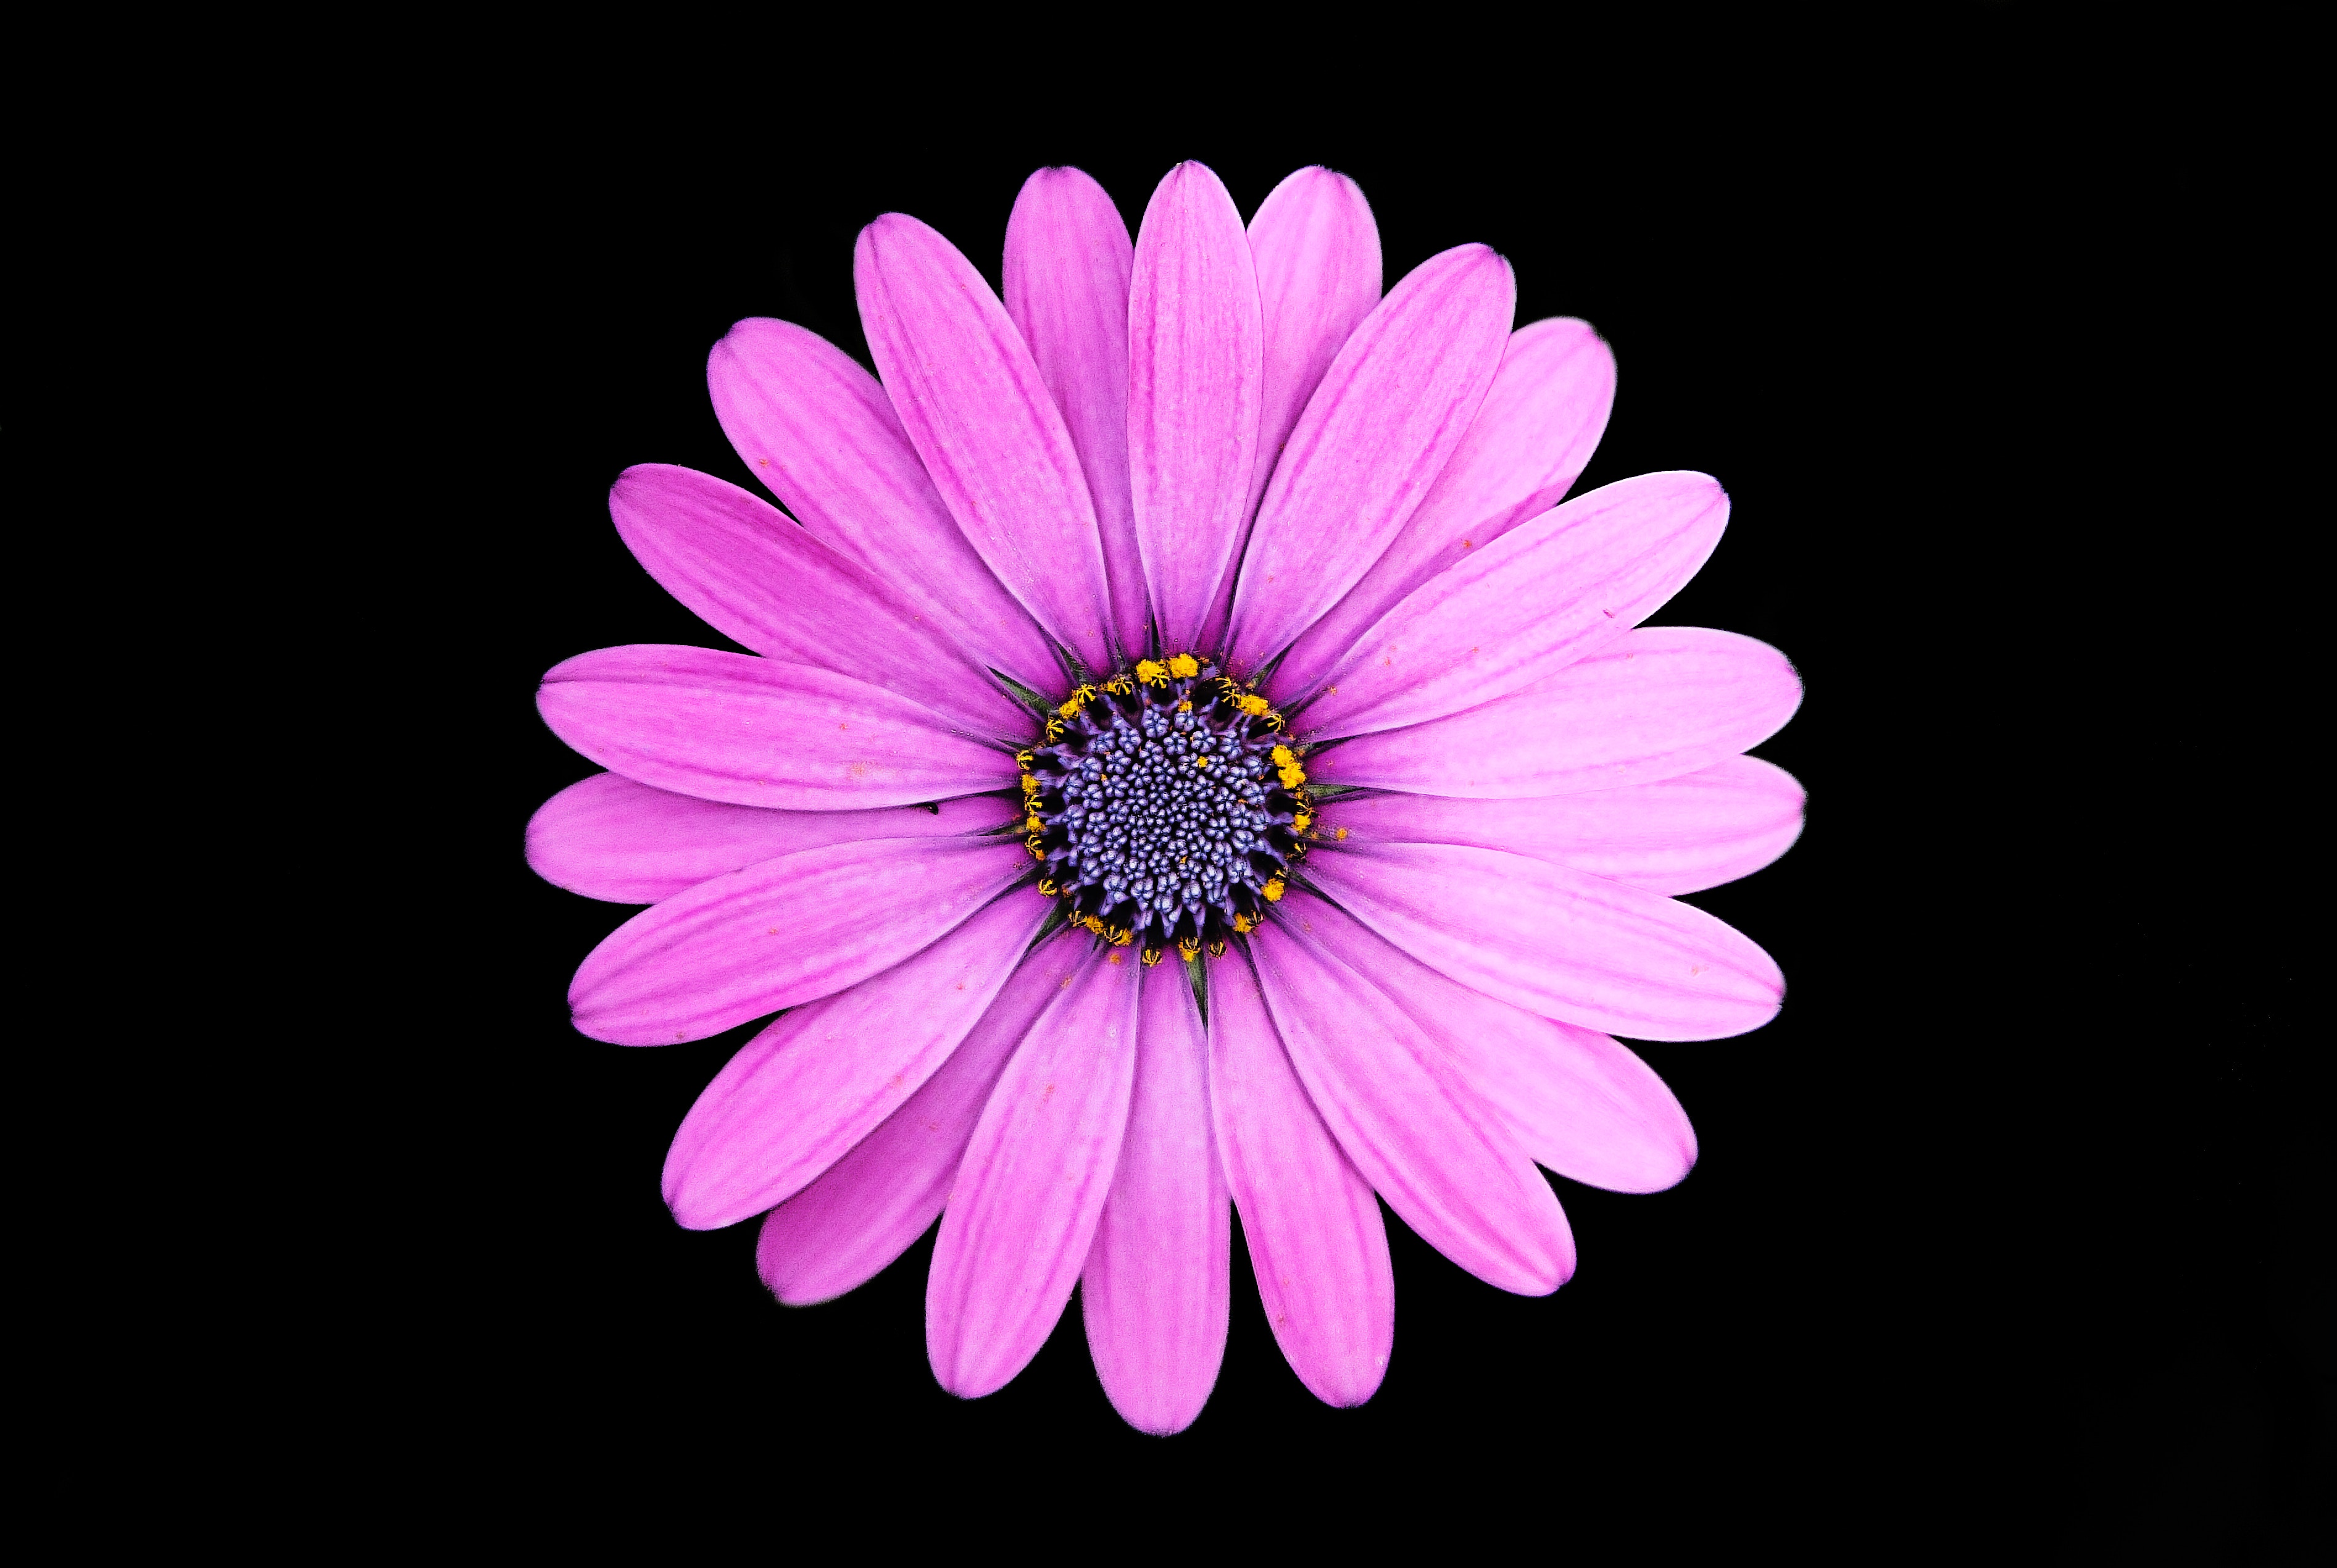 Original Resolution Popular - Purple Flowers With Dark Background